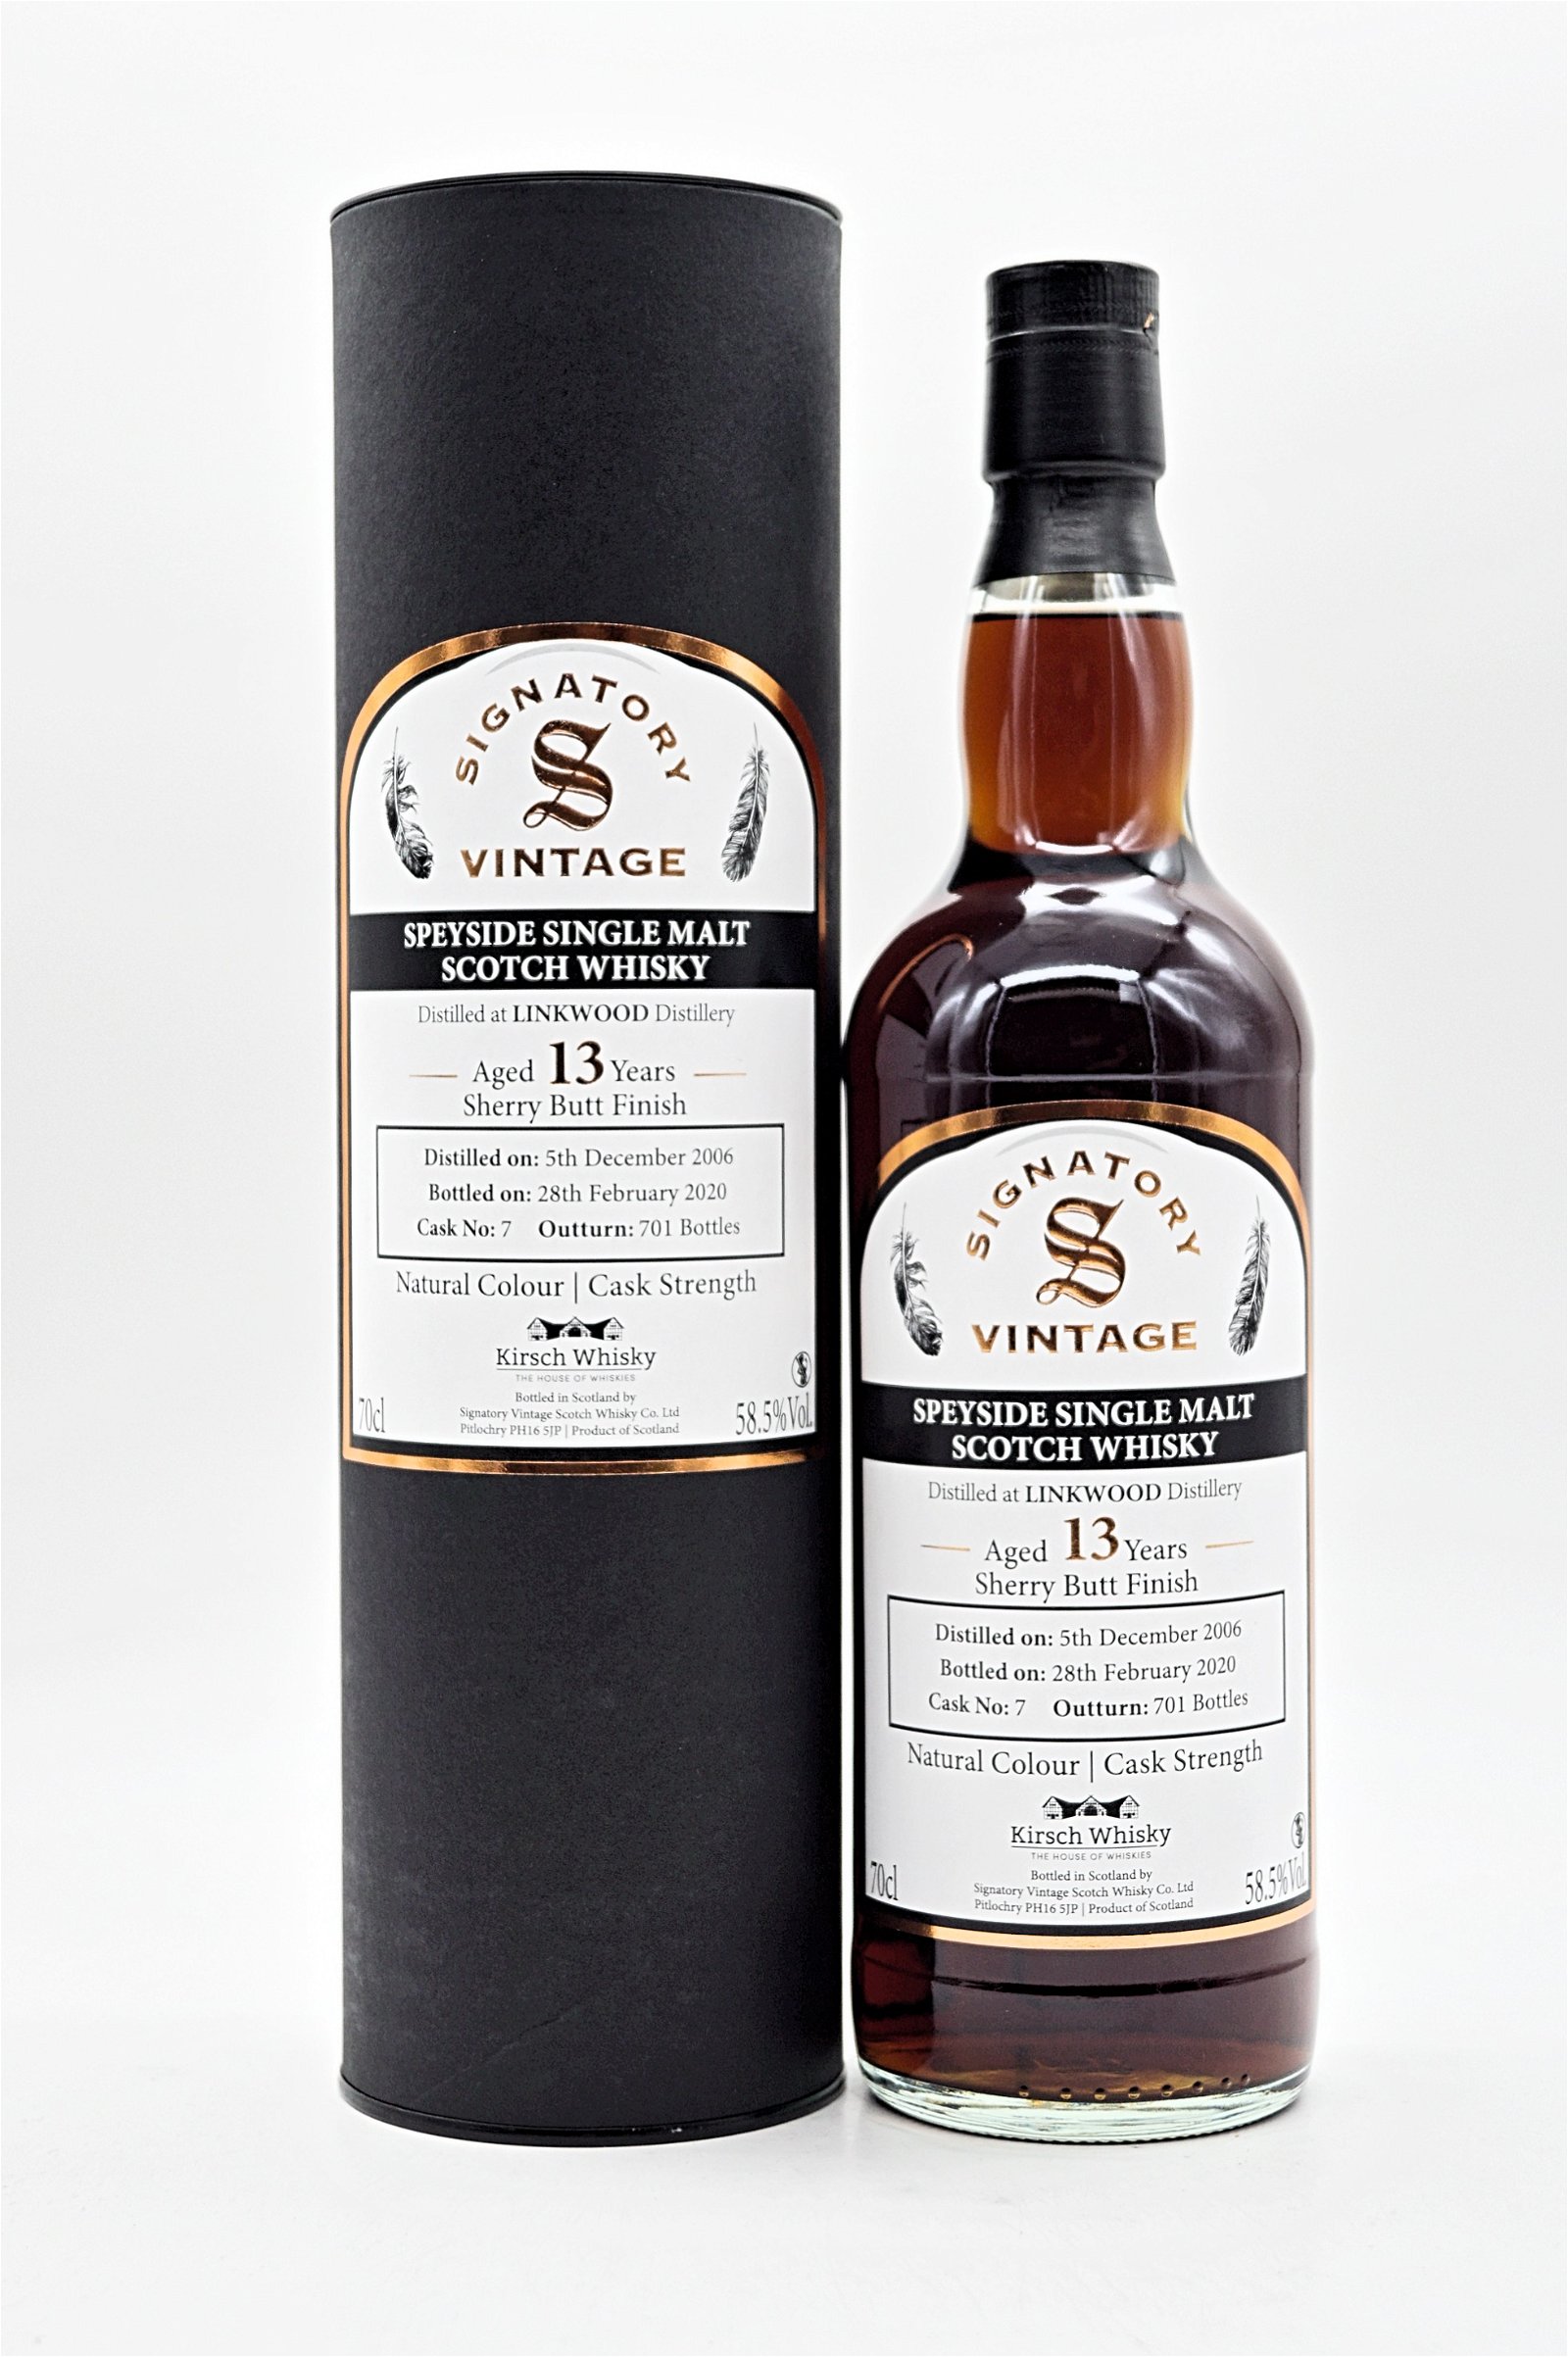 Signatory Vintage Single Malt Scotch Whisky Linkwood 13 Jahre Sherry Butt Finish 2006/2020 Cask No. 7 